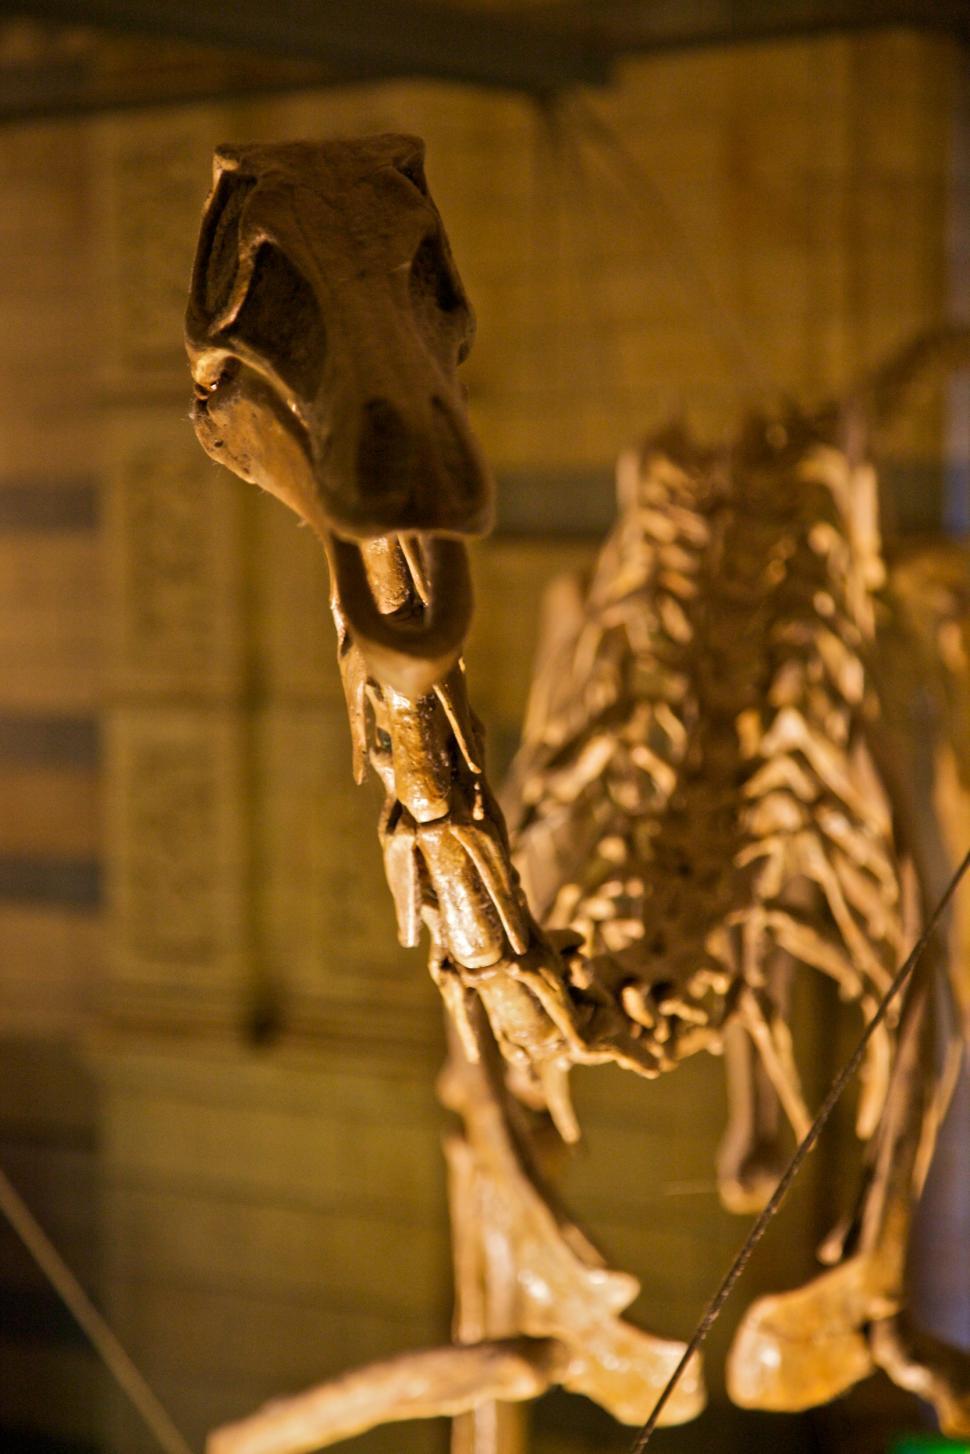 Free Image of Dinosaur Skeleton Displayed in Museum 